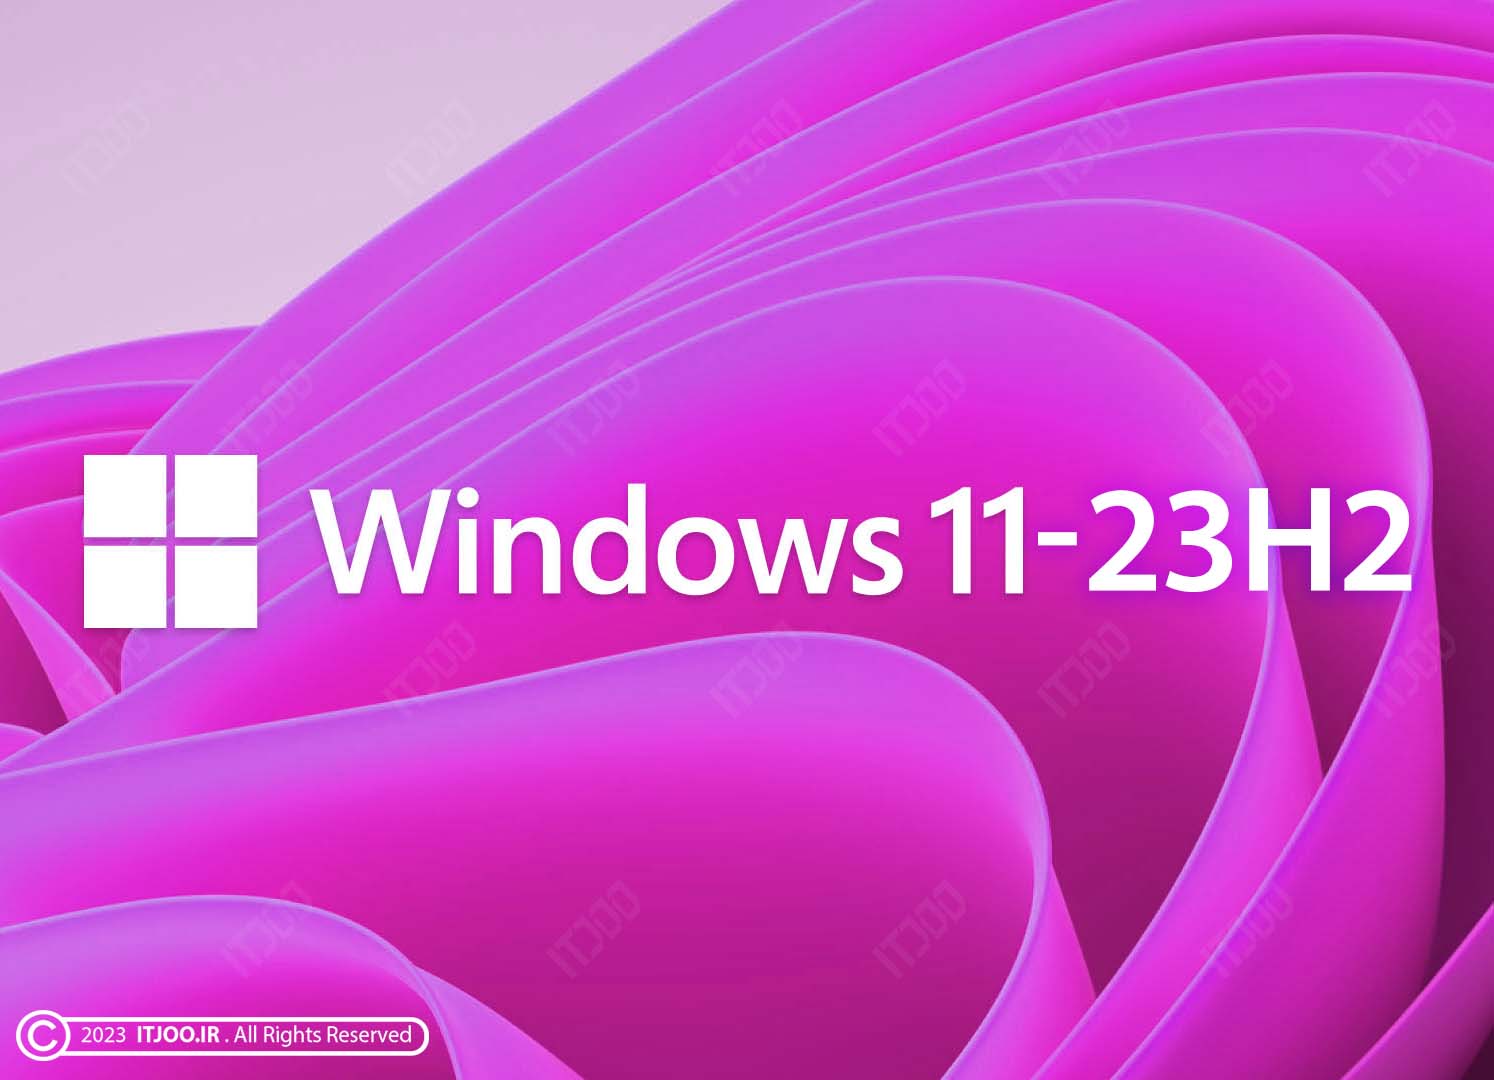 windows 11 23H2 - ویندوز ۱۱ ۲۳ اچ ۲